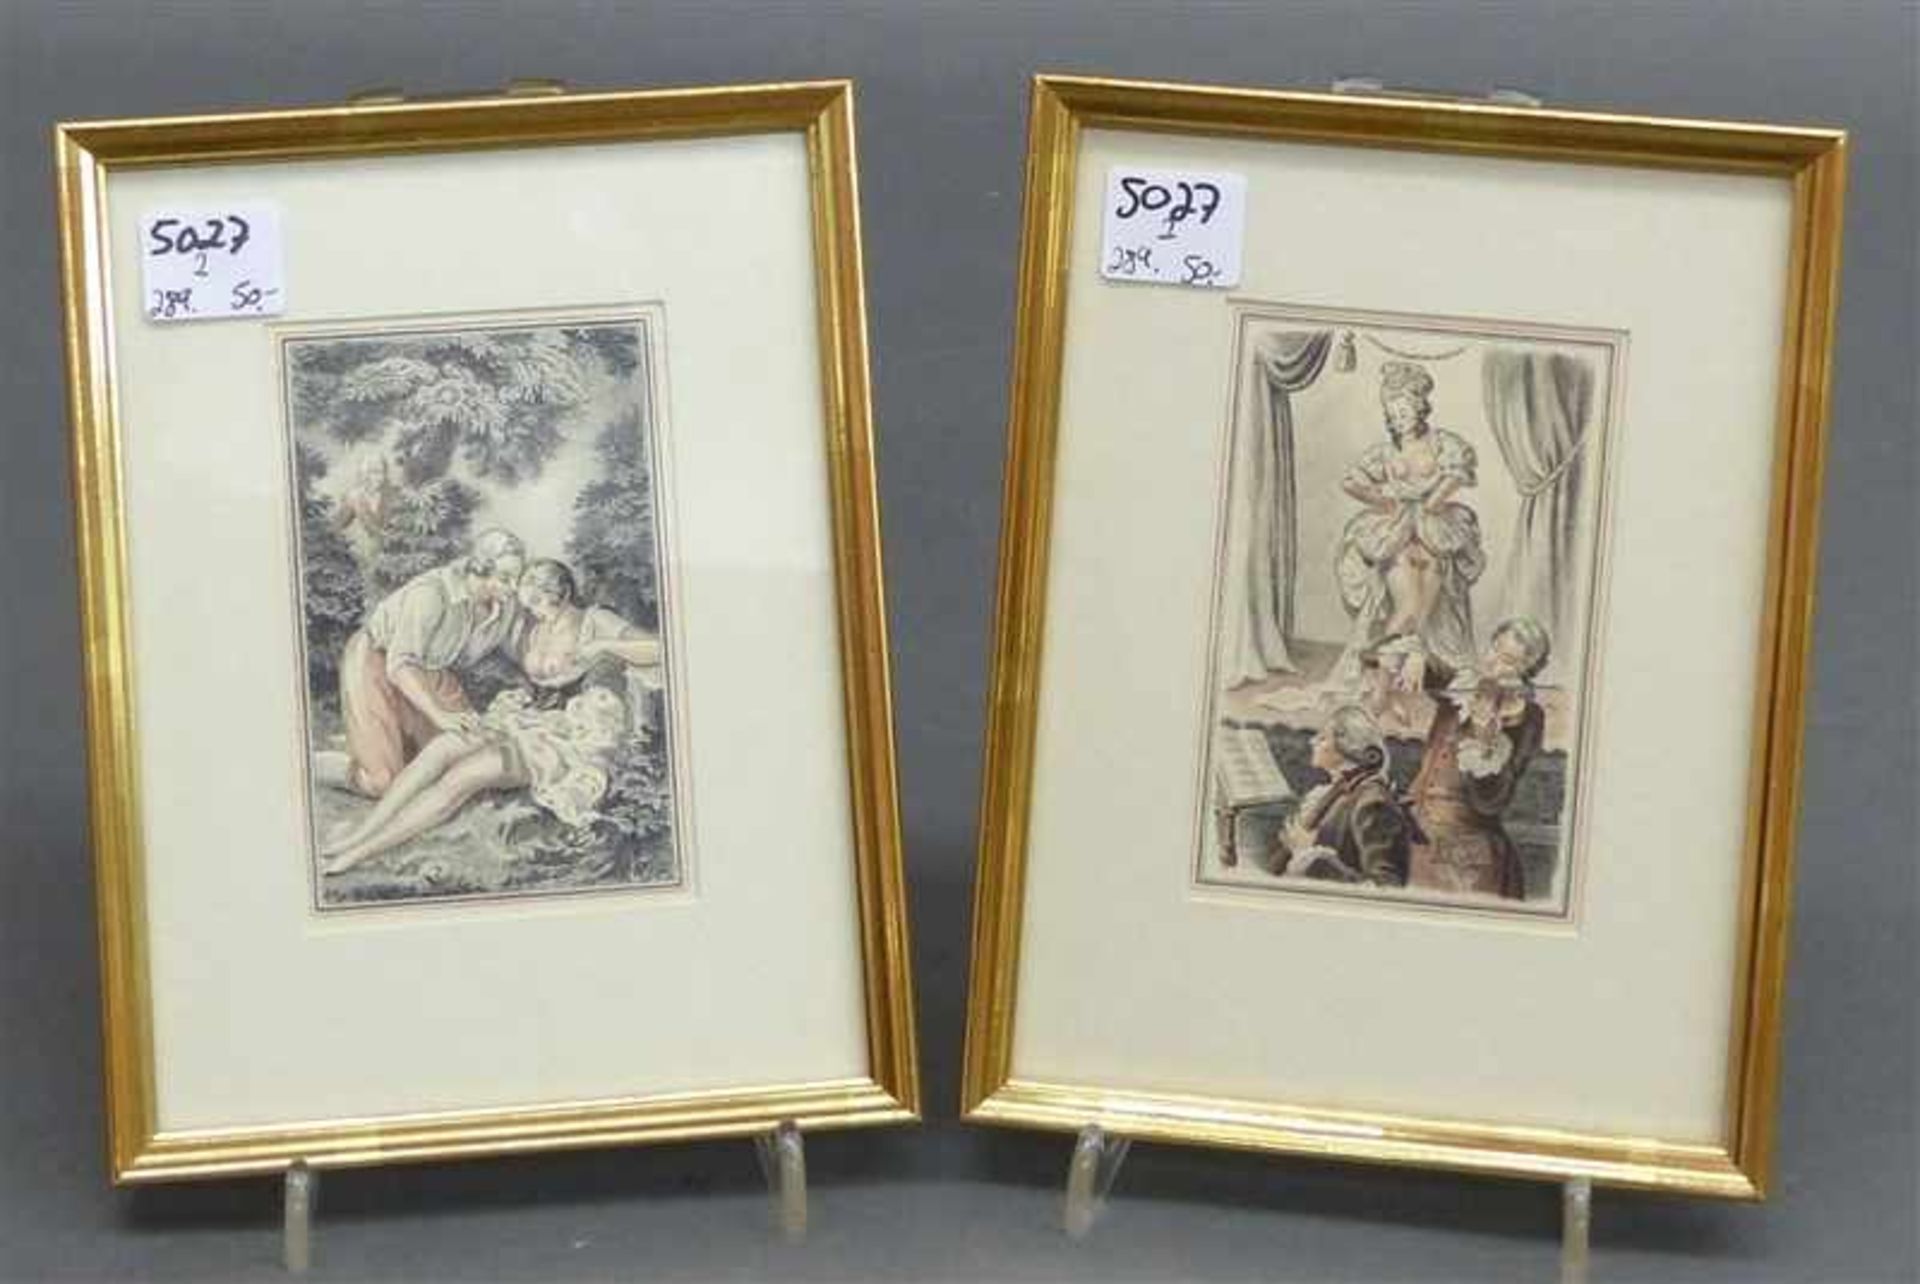 Paar Stiche, 19. Jh.coloriert, "erotische Darstellungen", je 10x6,5 cm,